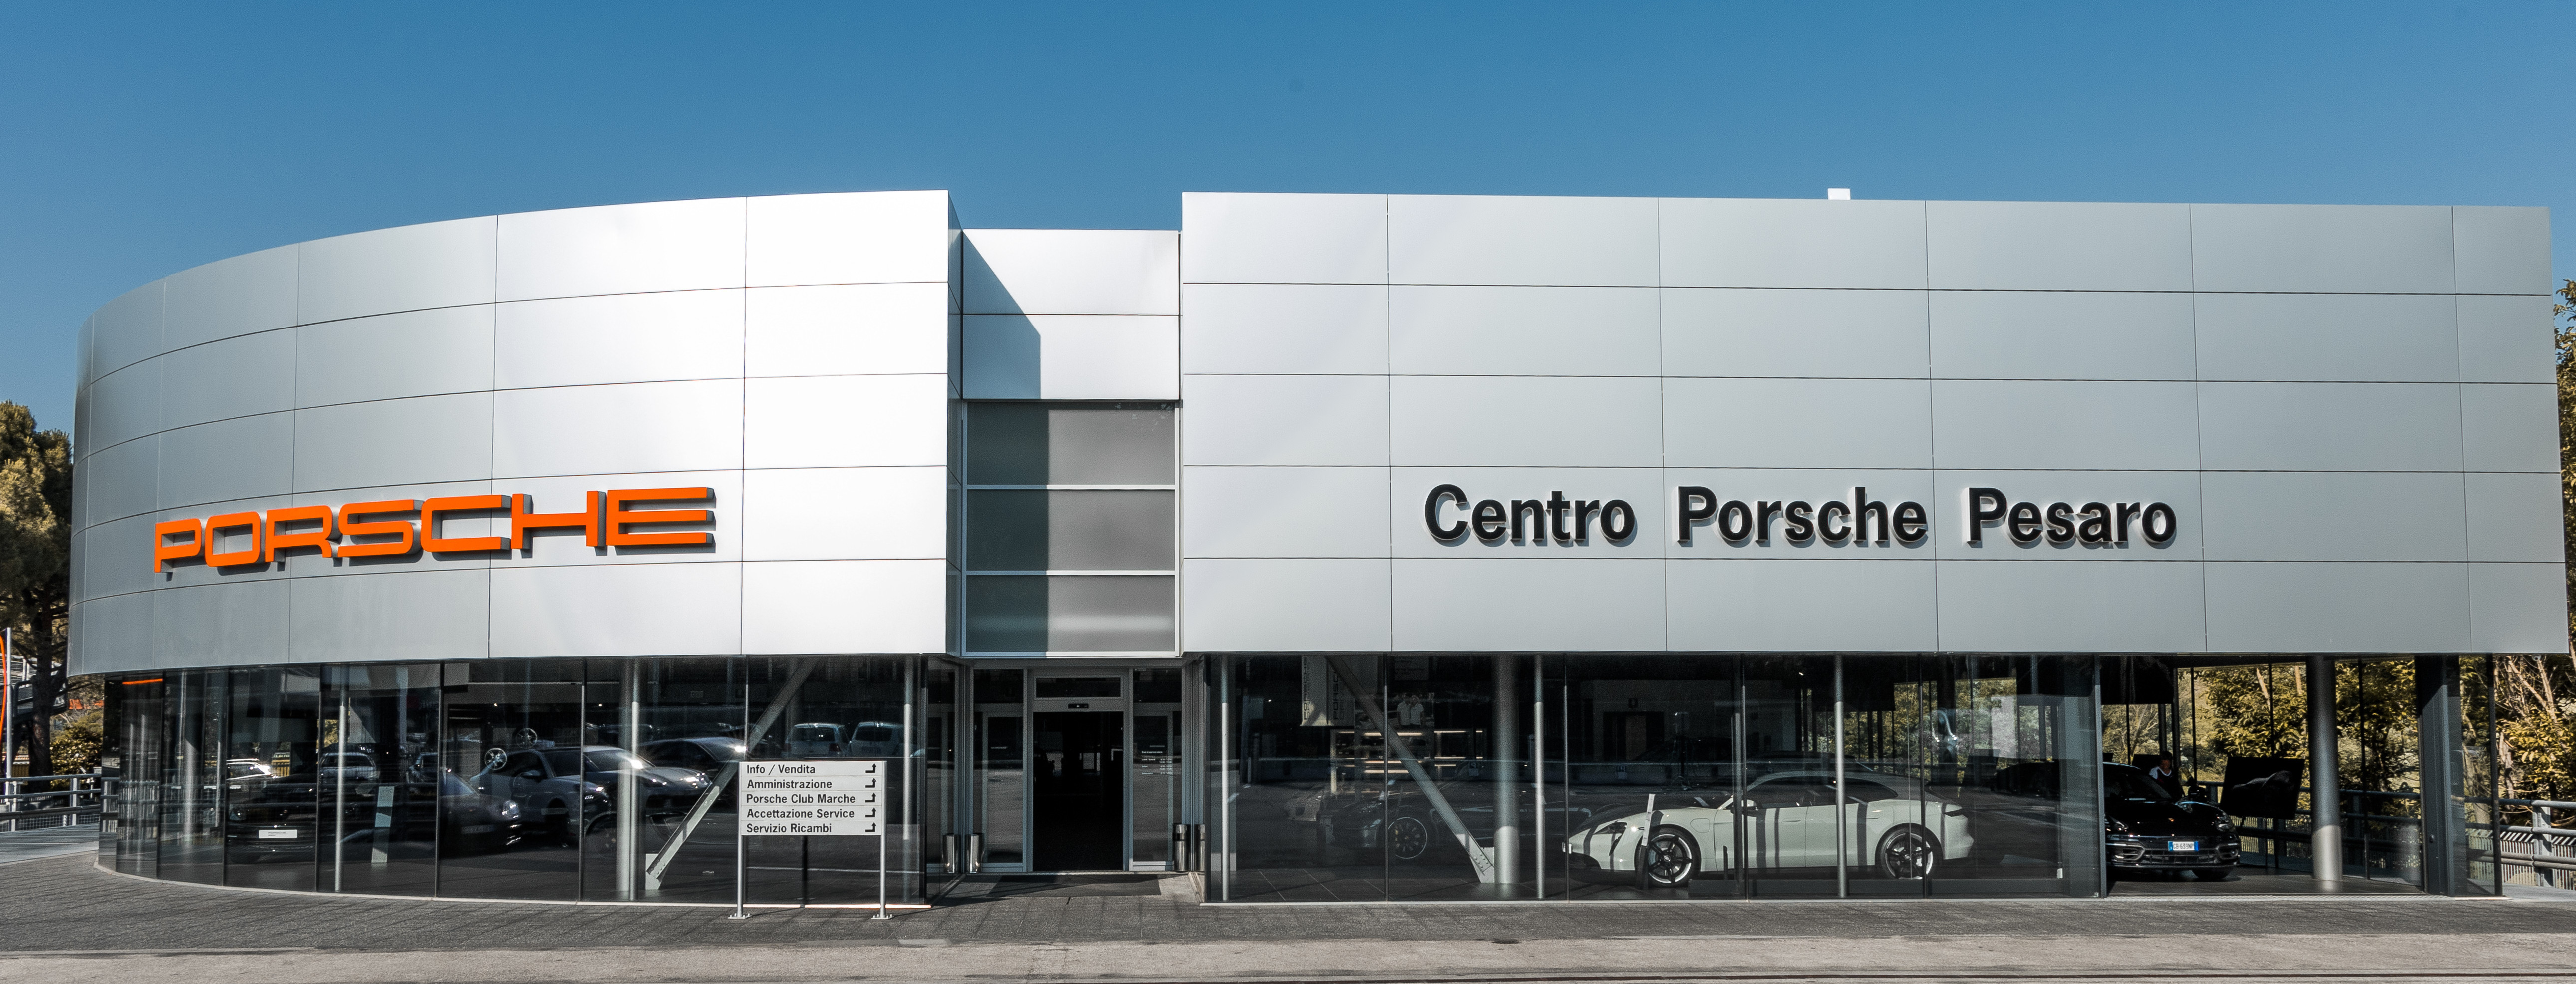 Centro Porsche Pesaro